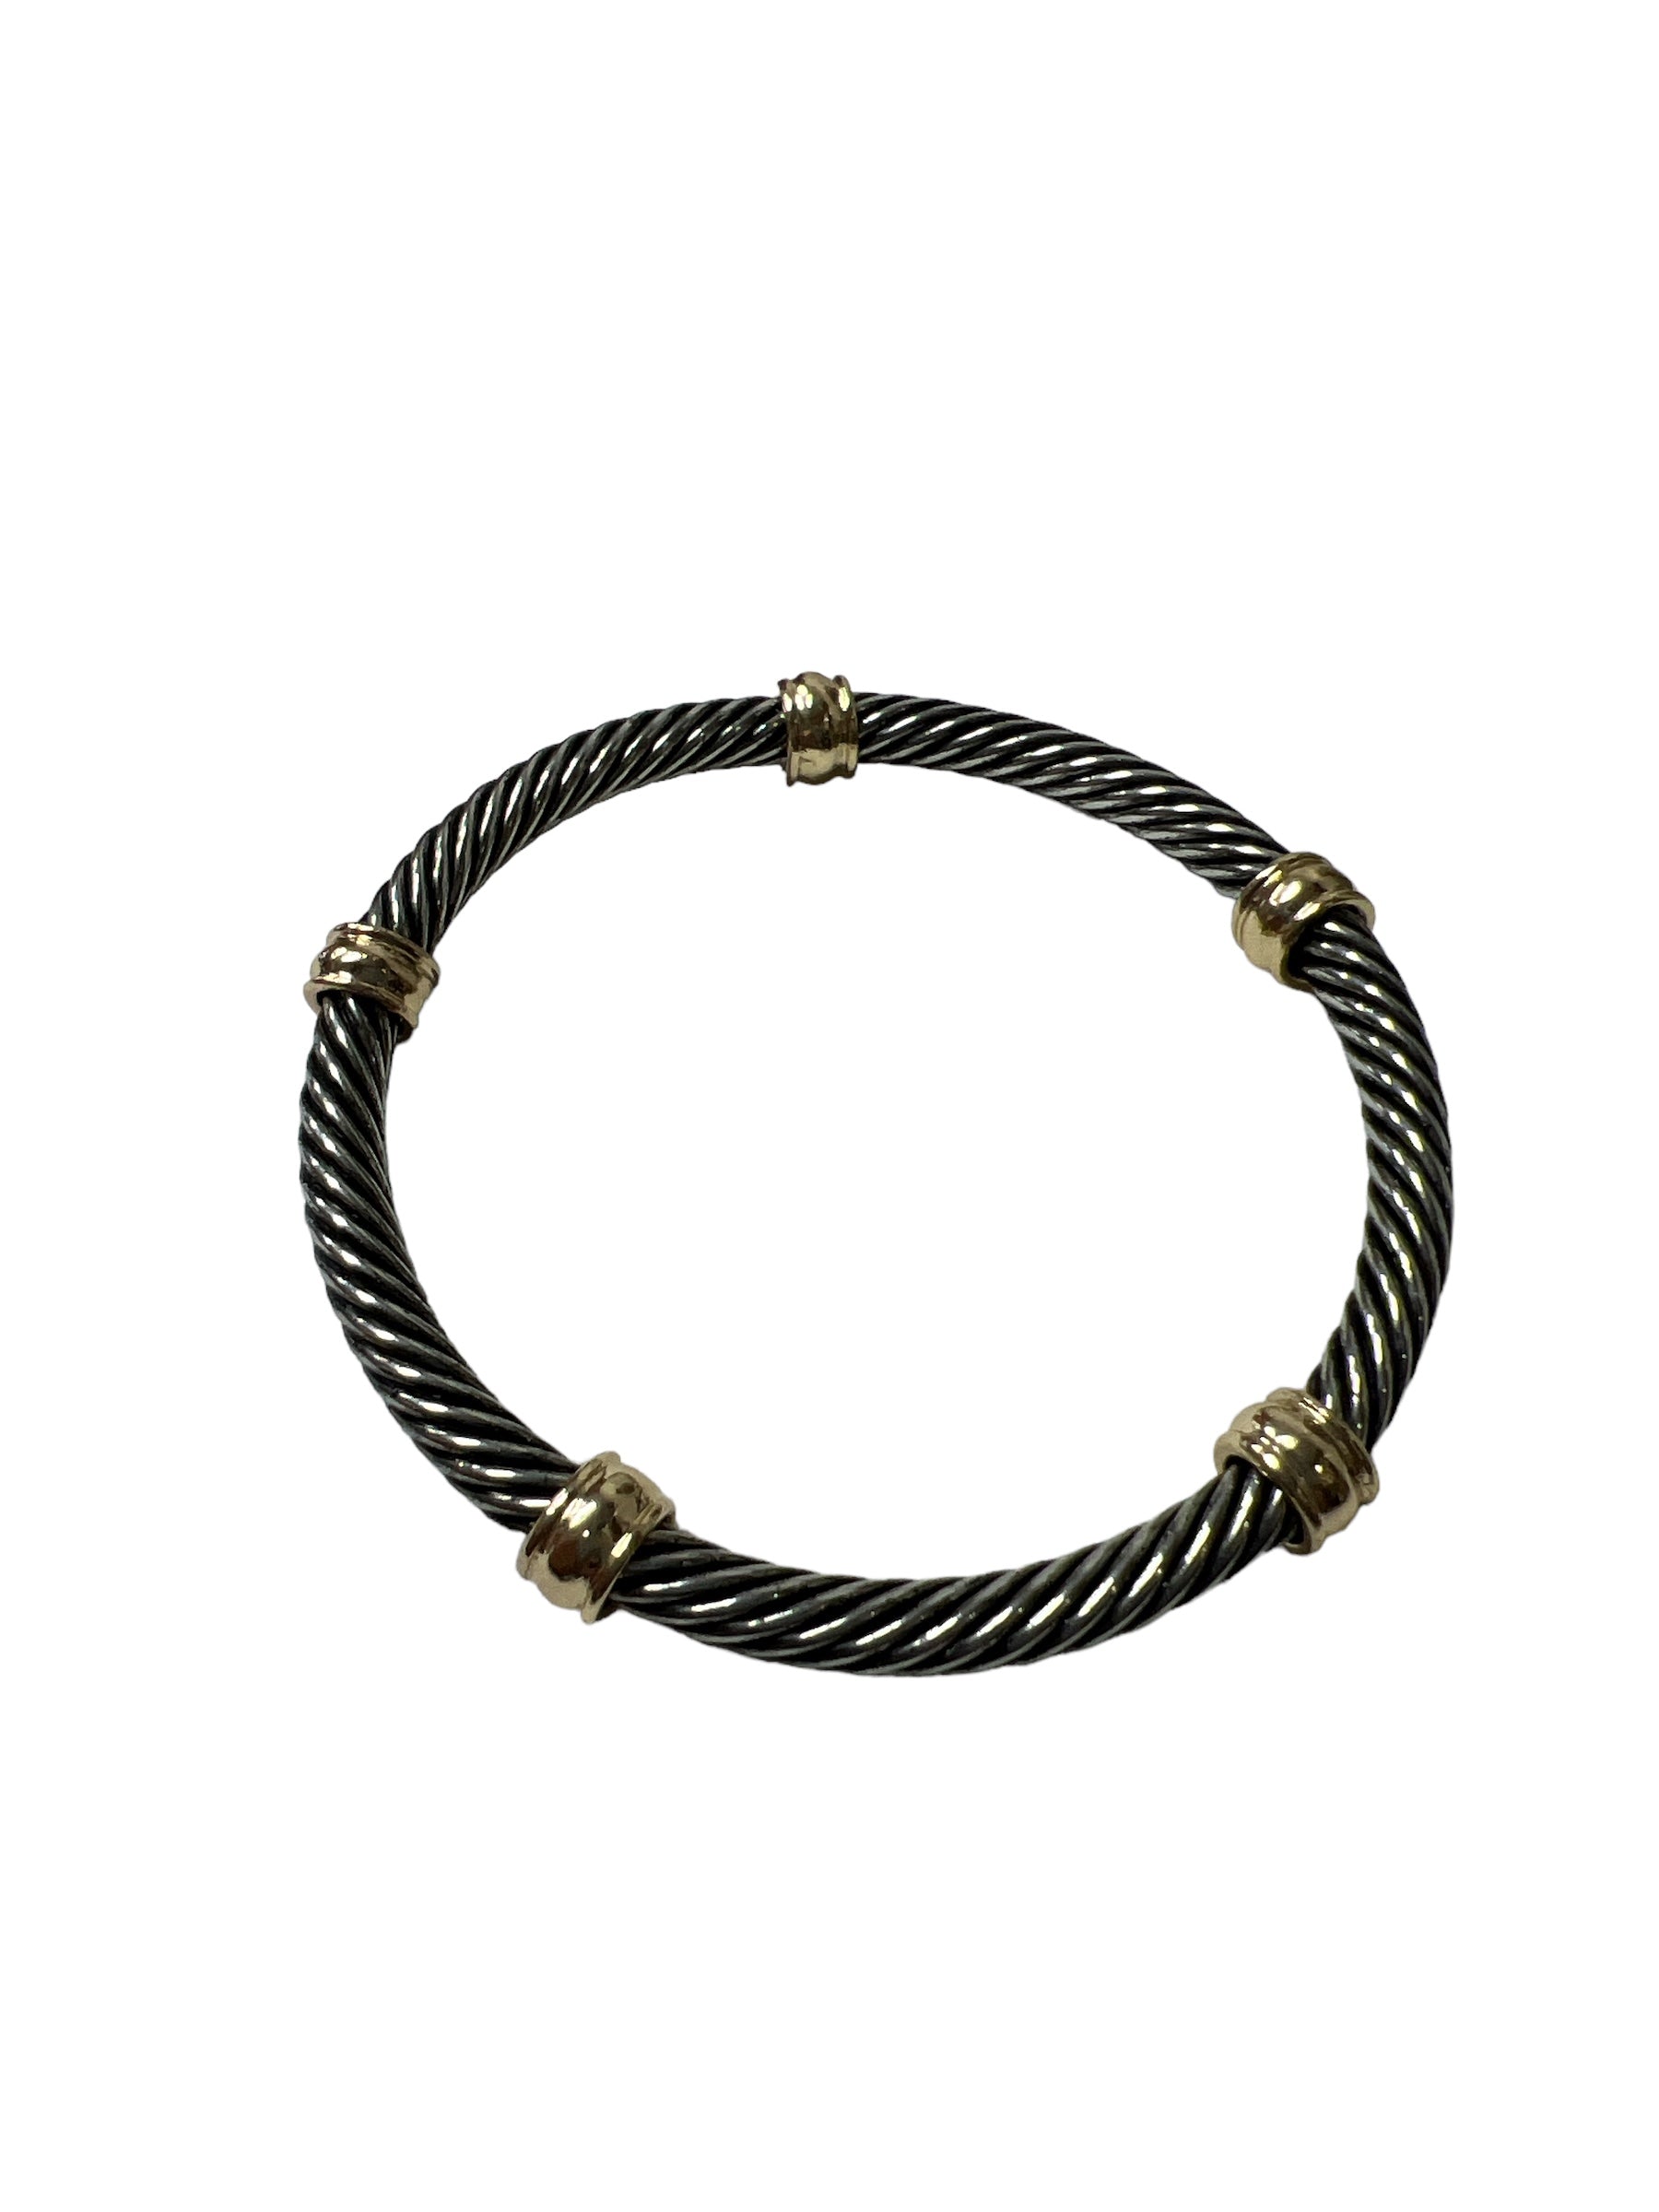 Delanie Bracelet-410 Jewelry-Simply Stylish Boutique-Simply Stylish Boutique | Women’s & Kid’s Fashion | Paducah, KY